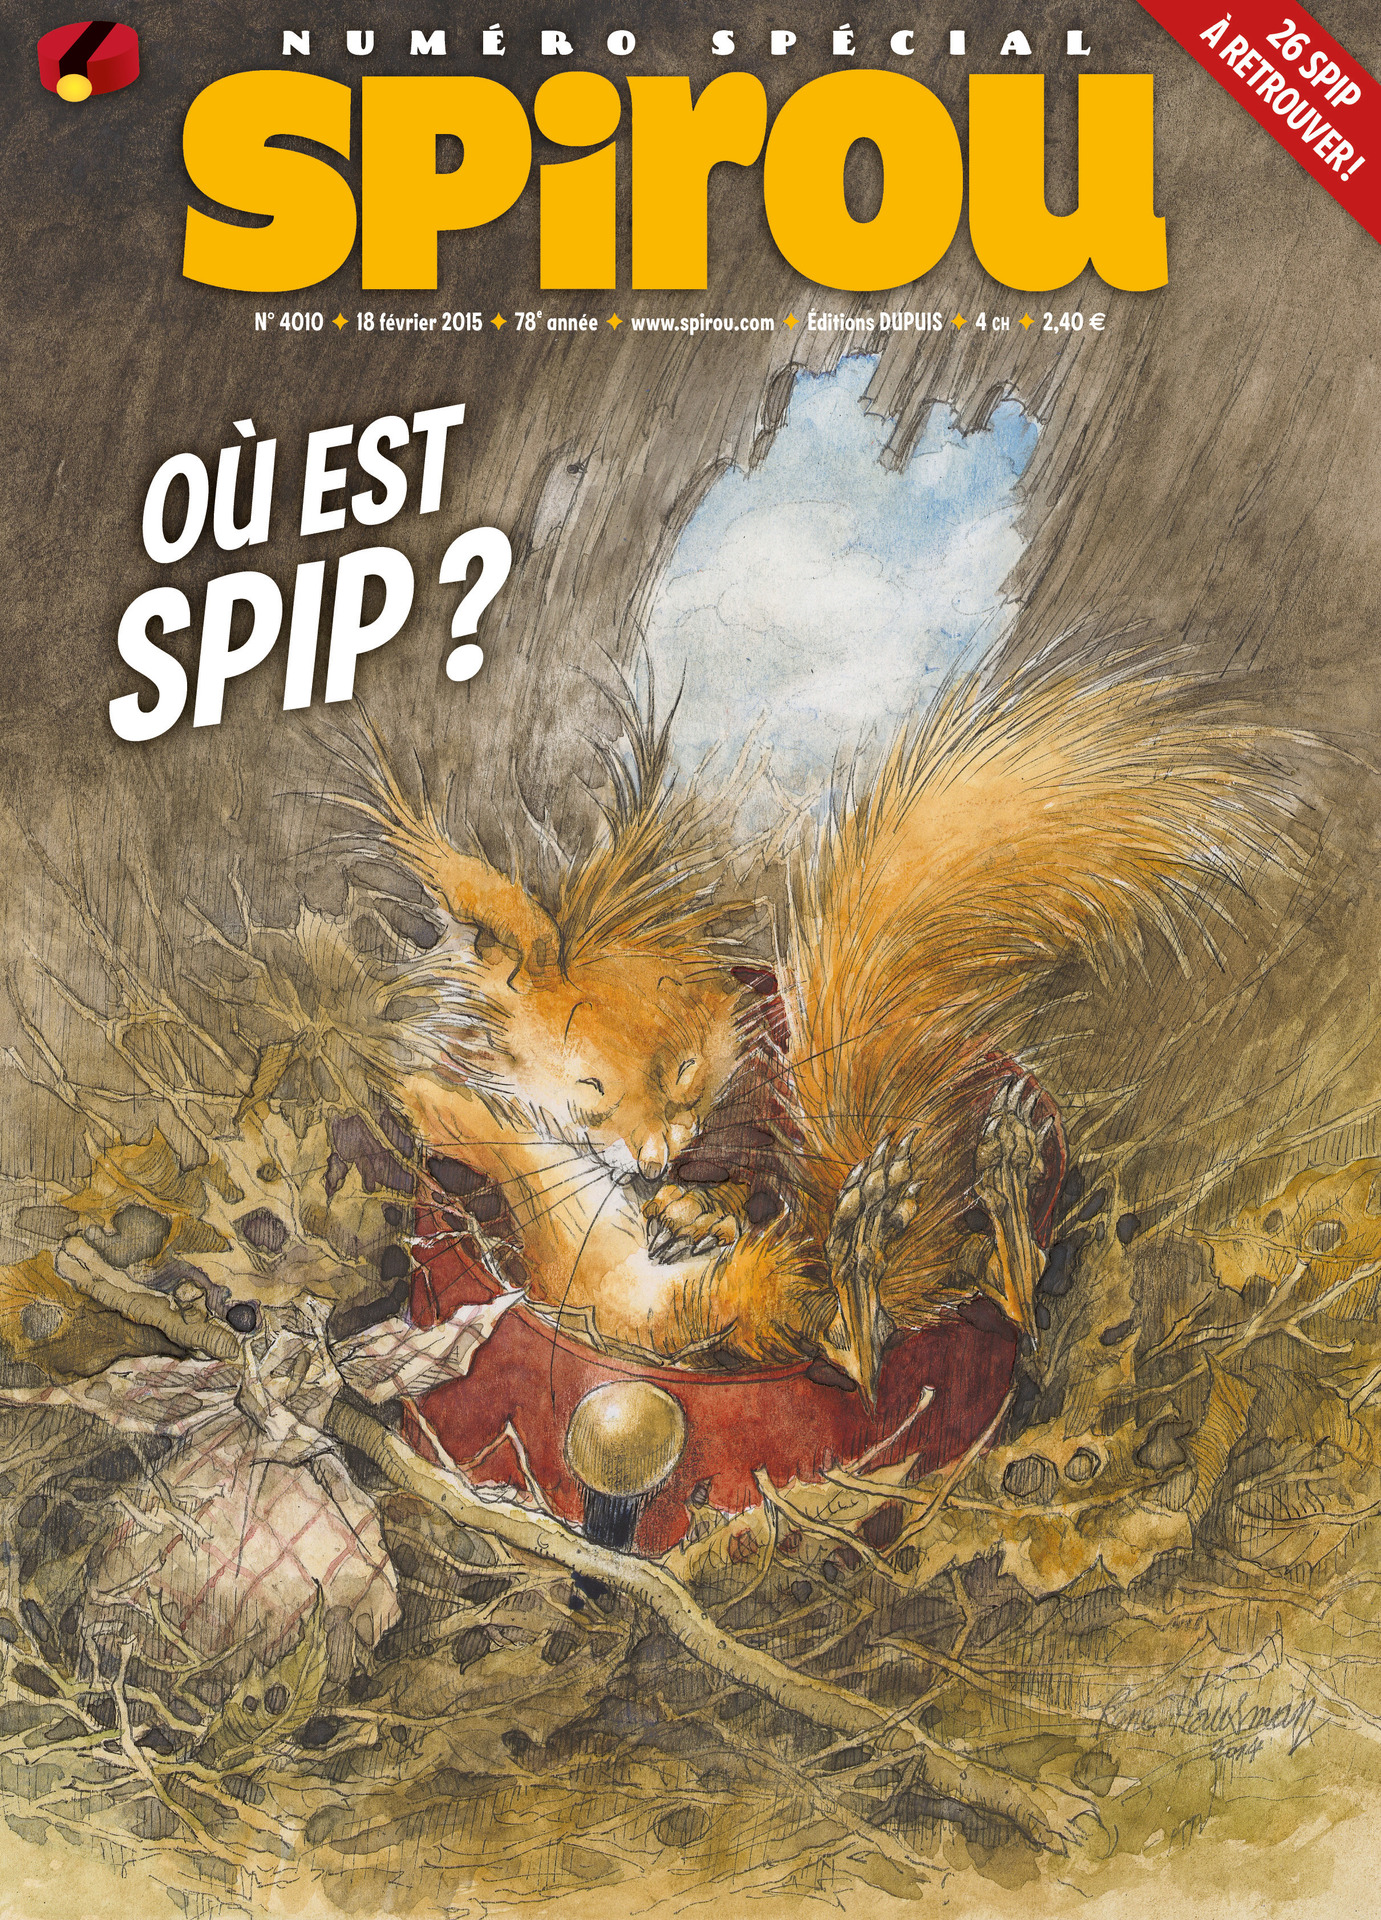 Journal de Spirou #4010 cover (ill. René Hausman; Copyright (c) 2015 Dupuis and the artist; image from izneo.com)